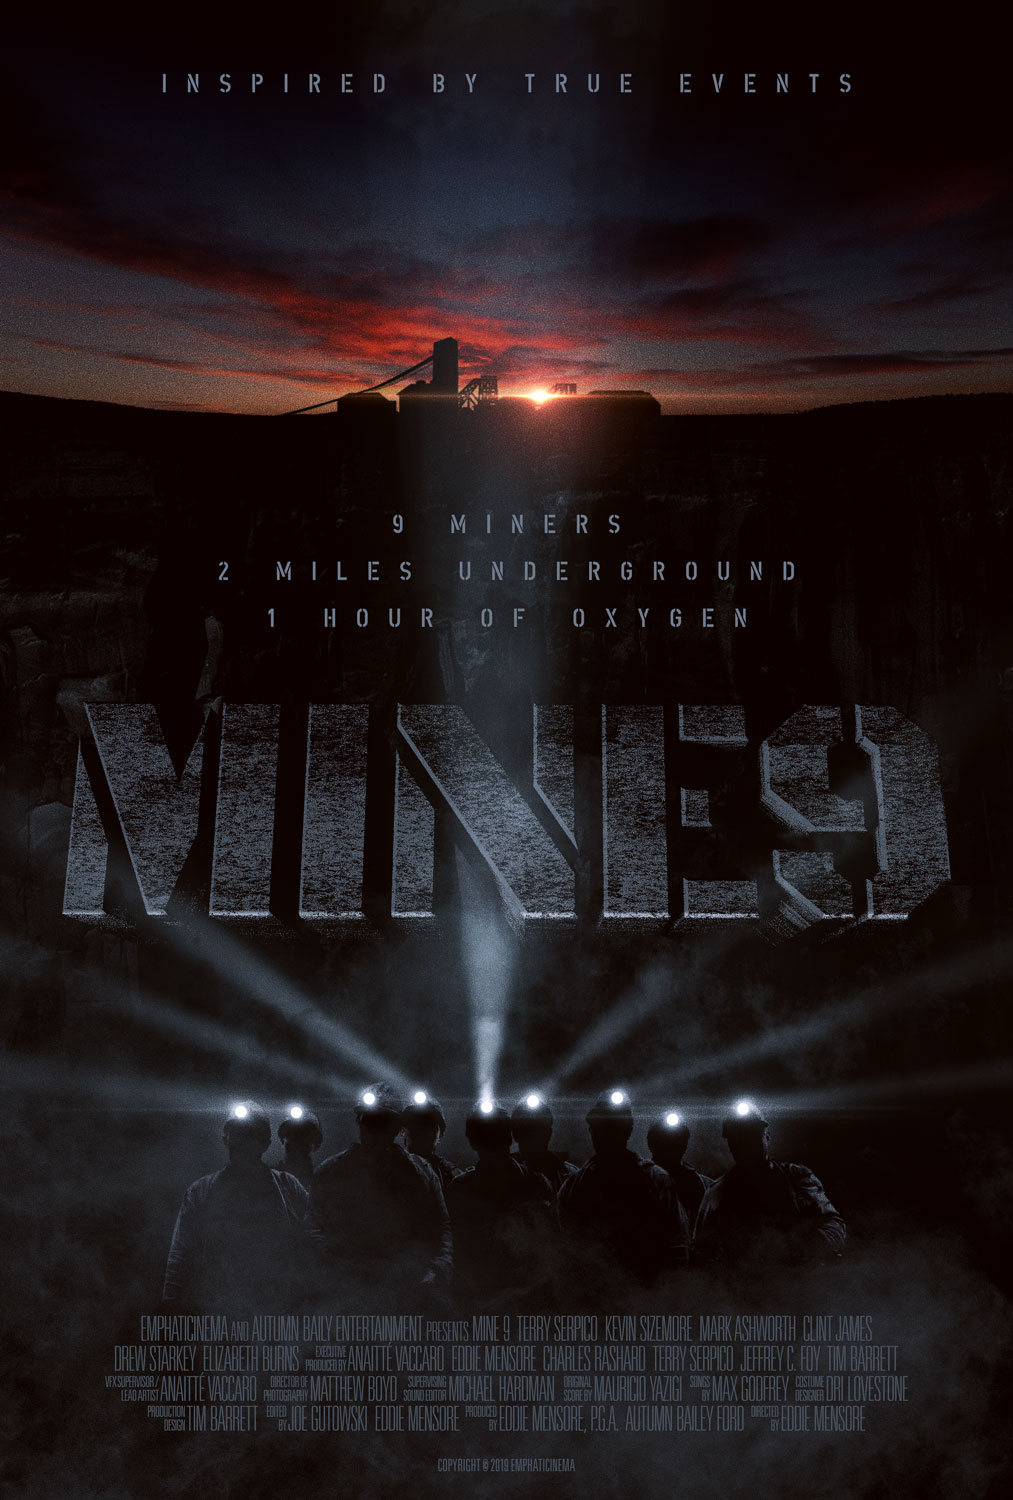 Mine 9 Movie Poster